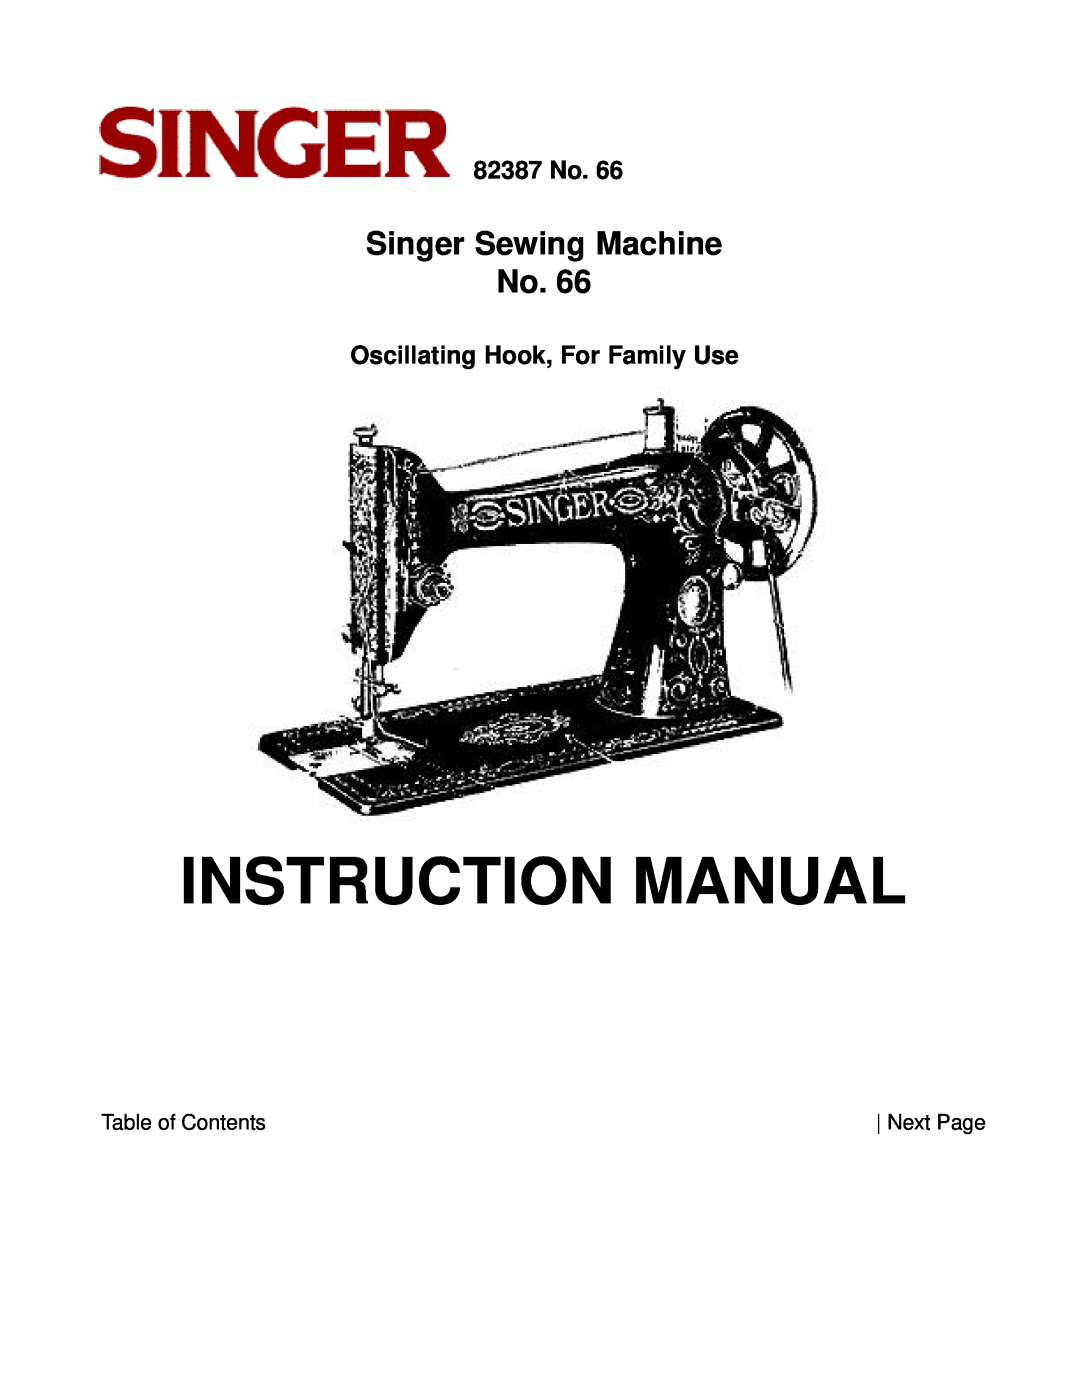 Singer instruction manual 82387 No, Oscillating Hook, For Family Use, Instruction Manual, Singer Sewing Machine No 